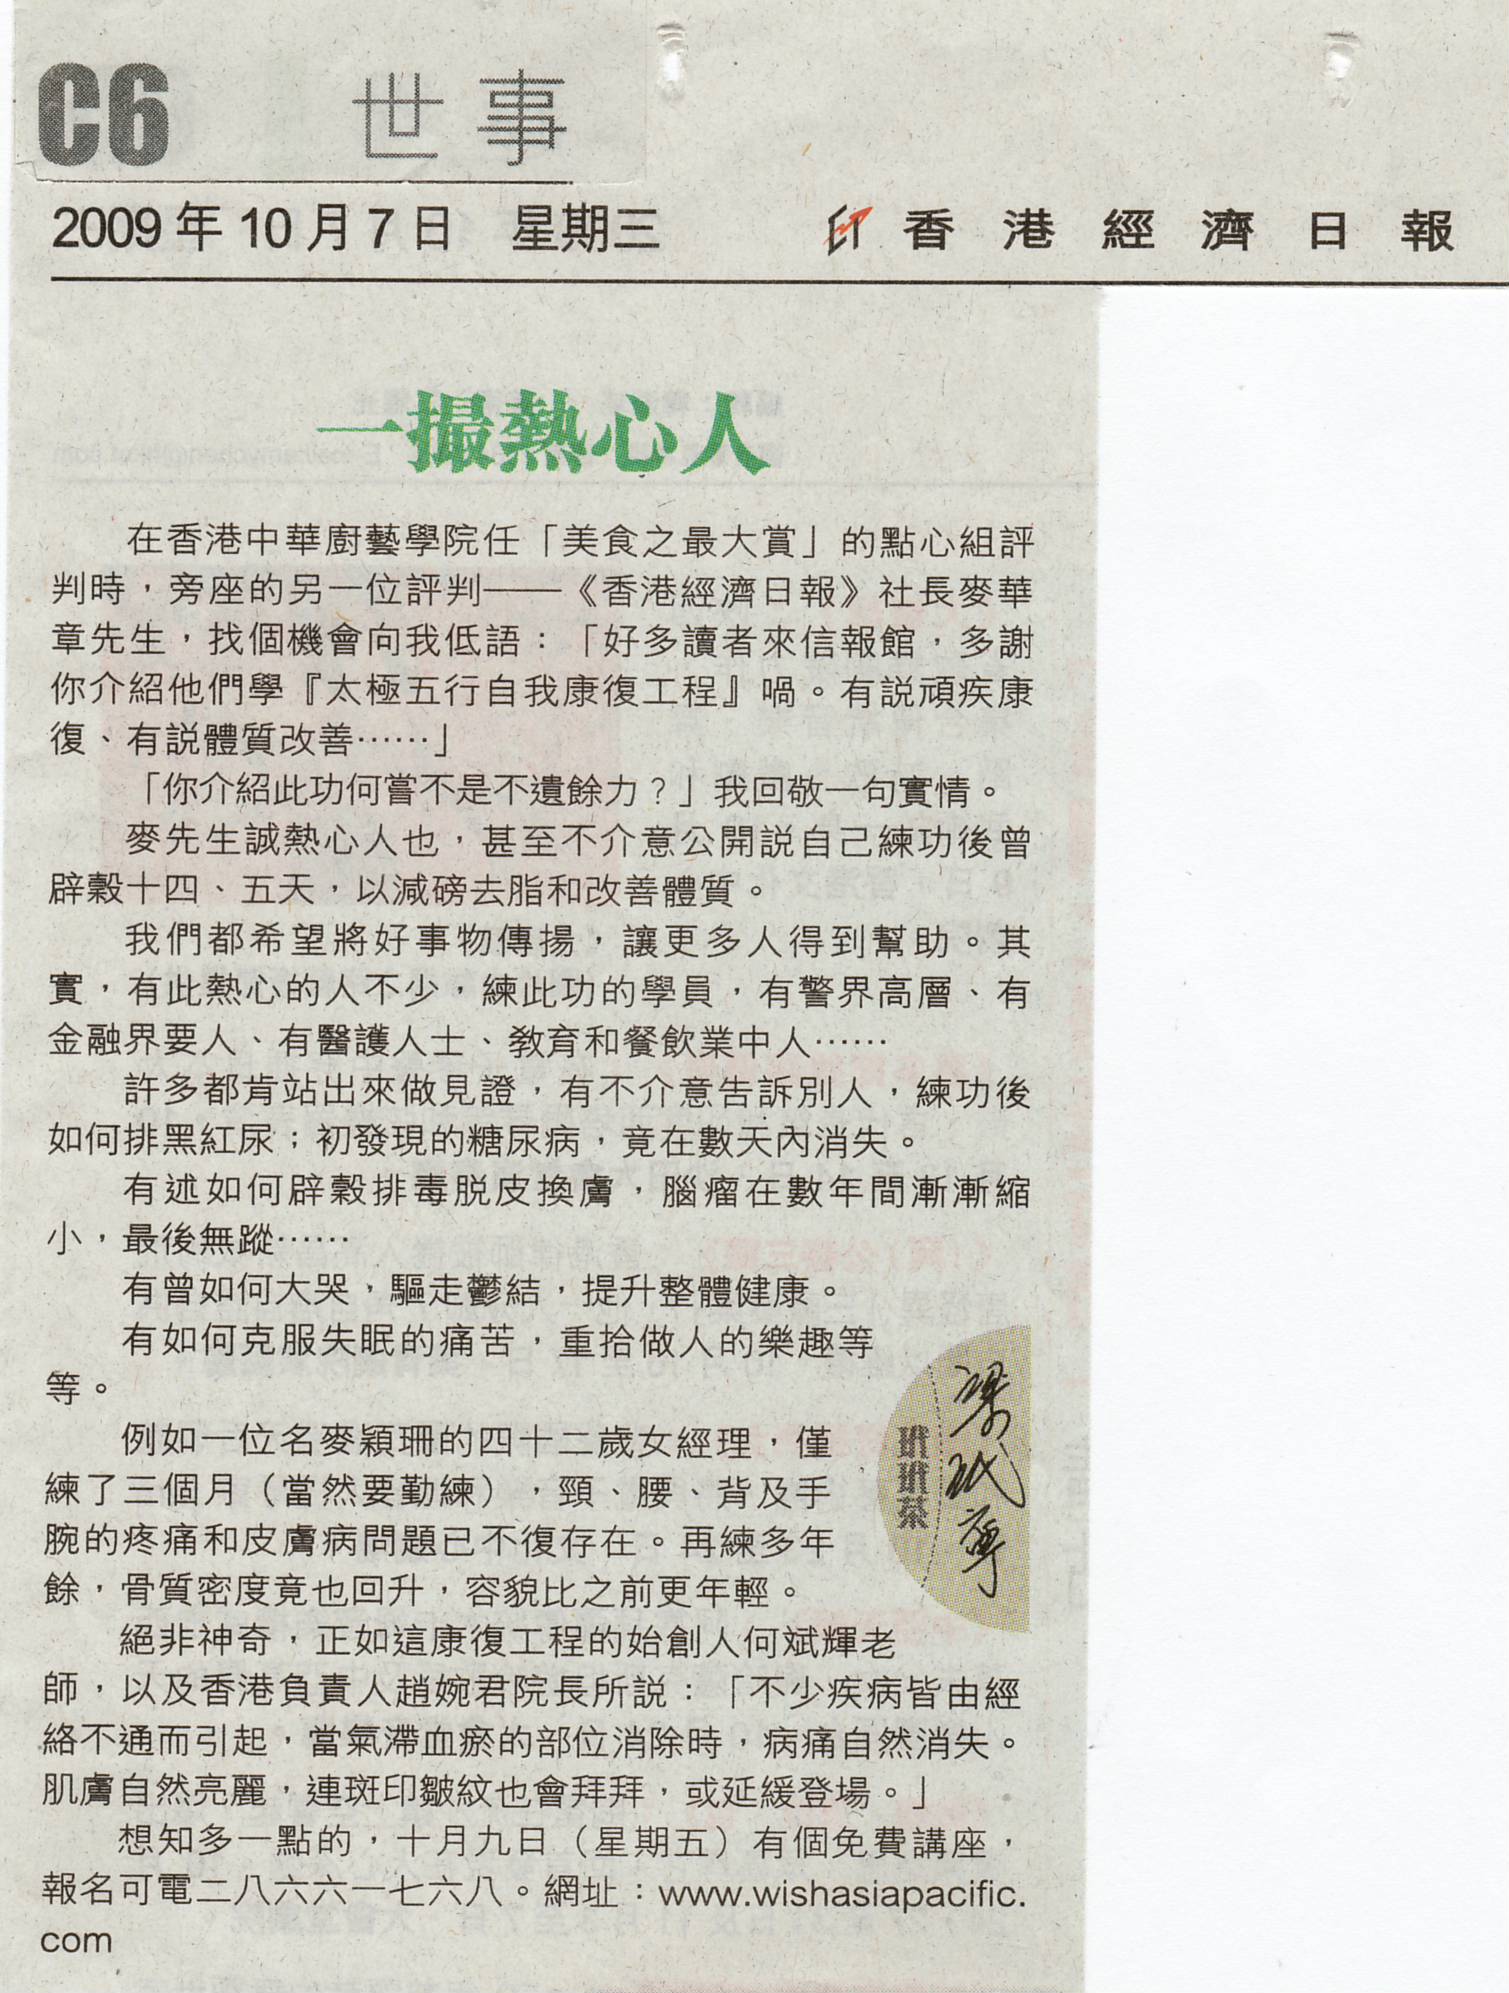 香港經濟日報︰2009年10月7日 (一撮熱心人)